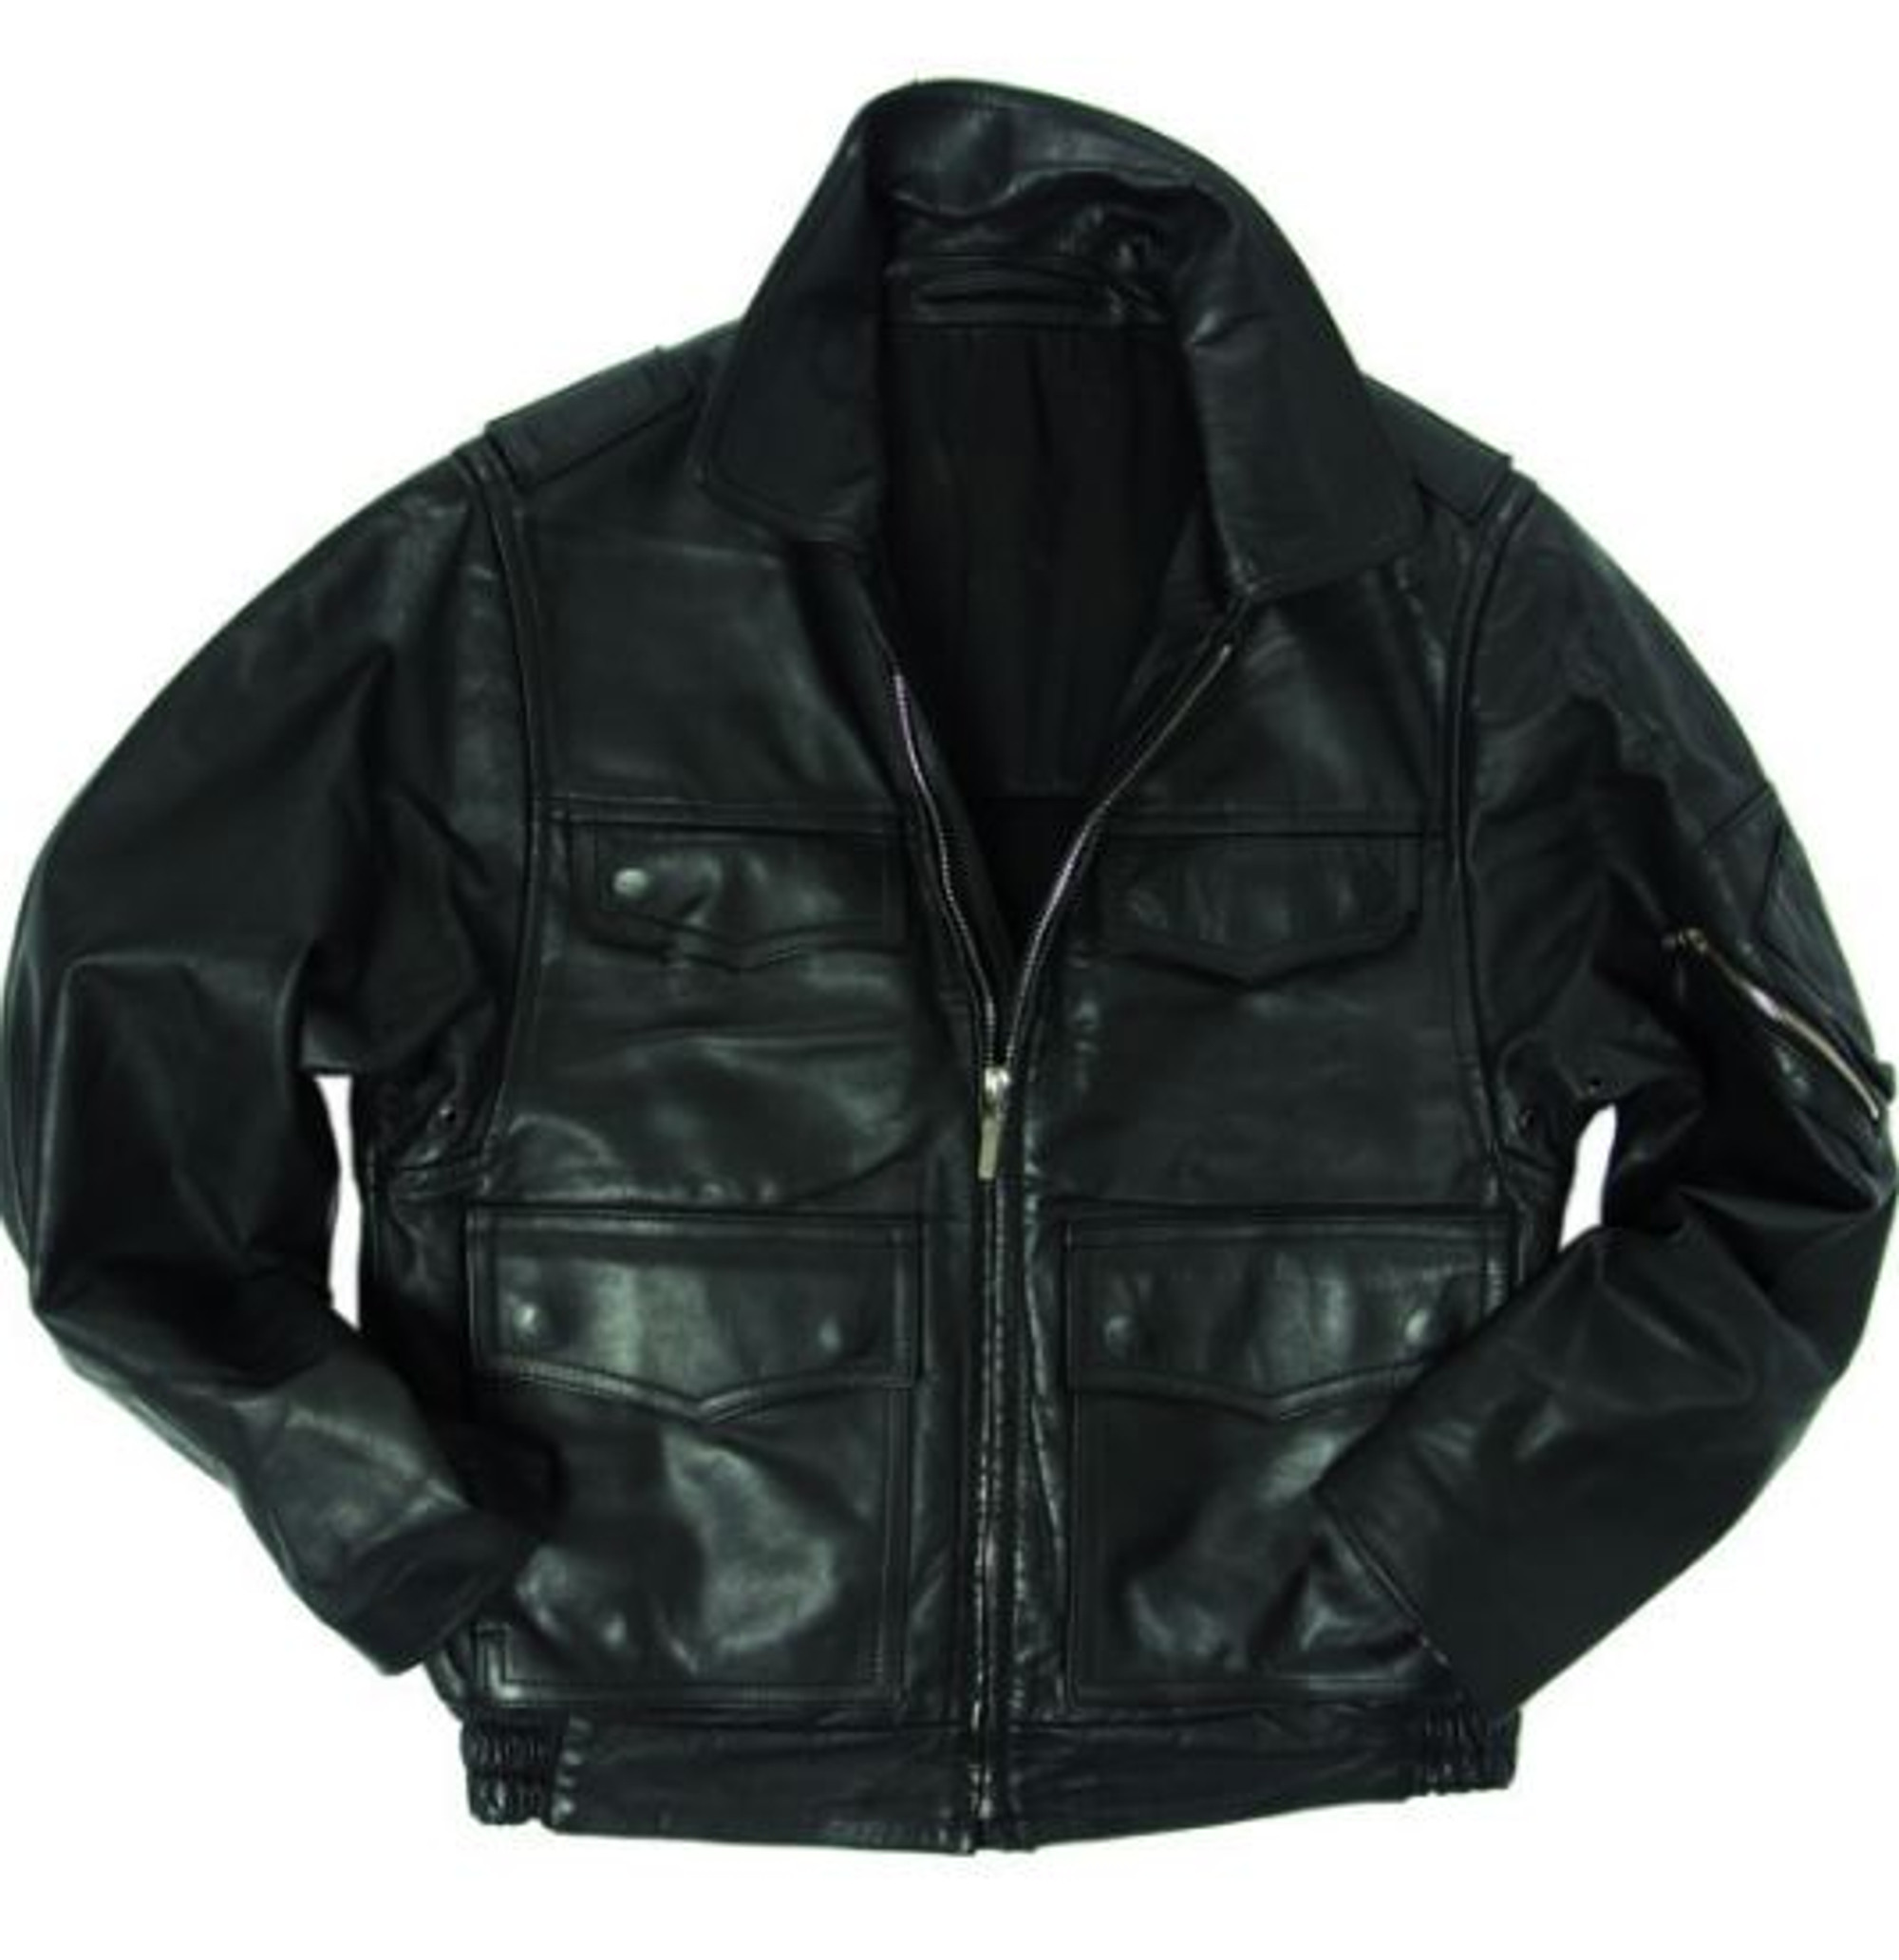 BGS Model I Black Leather Jacket